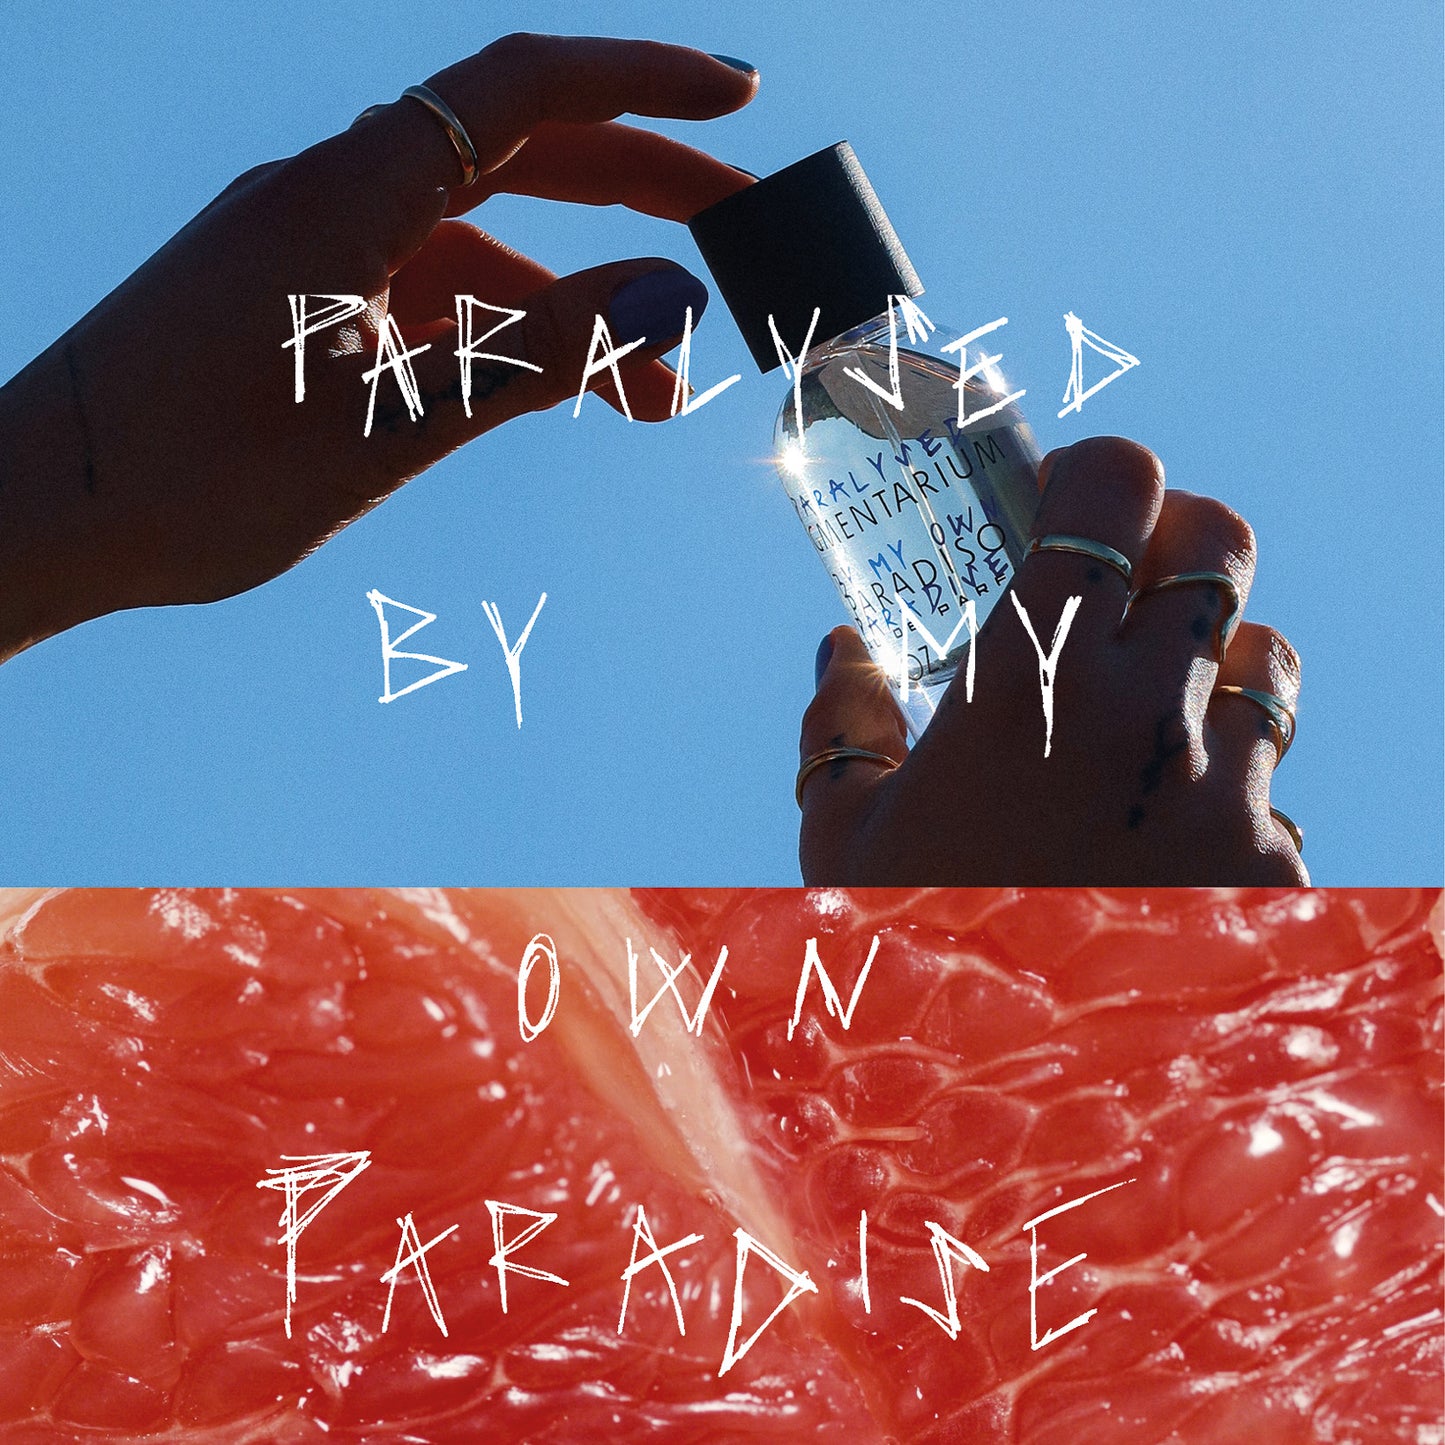 Pigmentarium Paradiso Limited Edition Michaela Fenkl